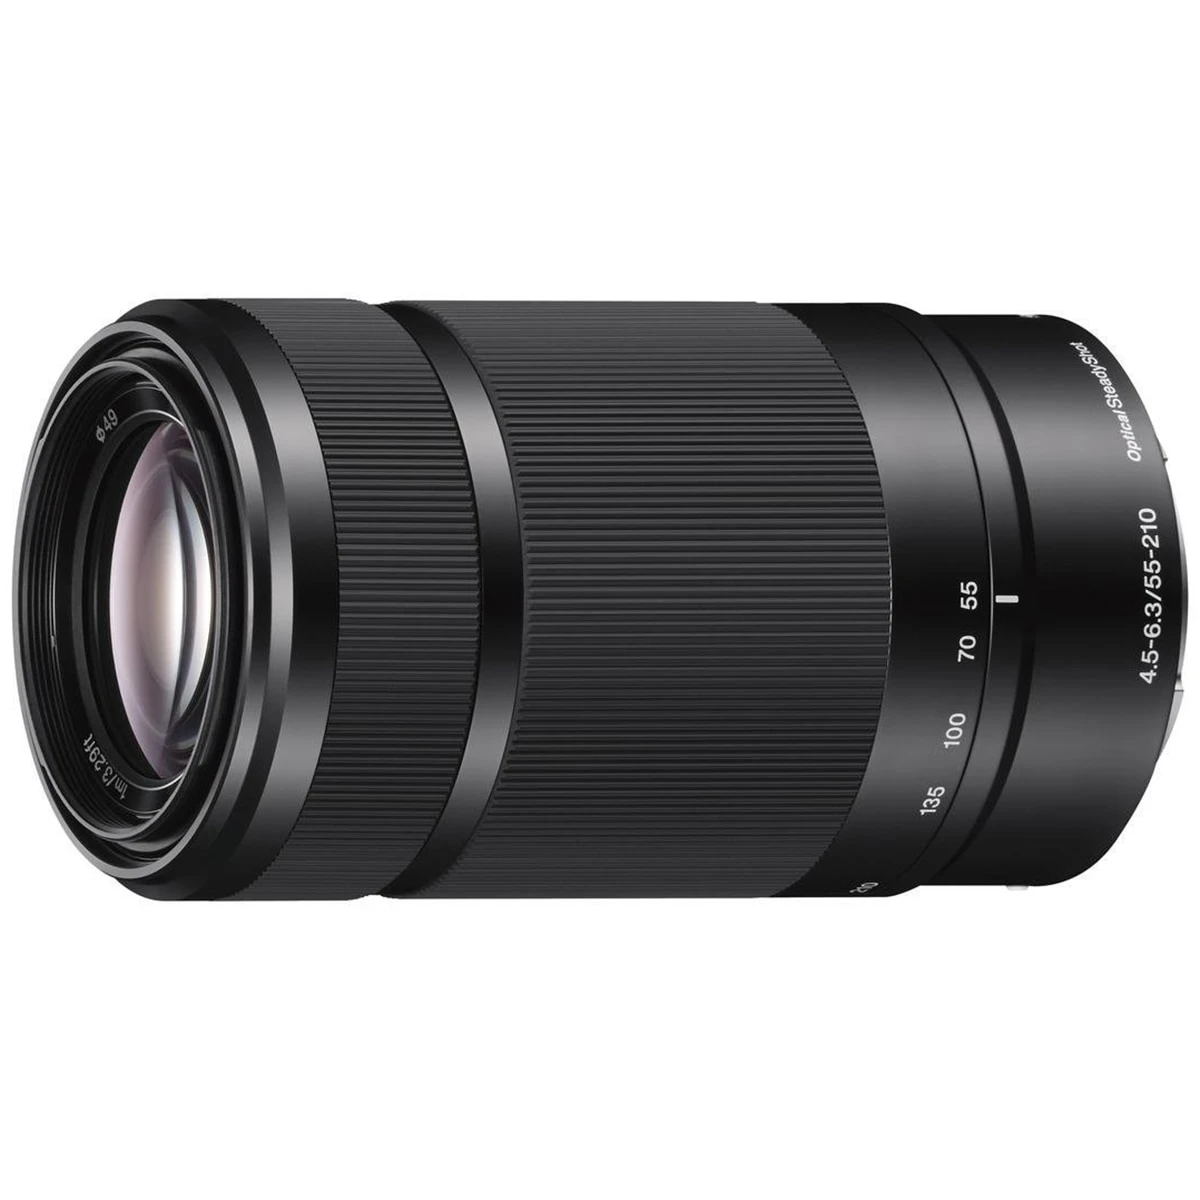 Sony 55-210mm f/4.5-6.3 OSS objektív - Fekete (371659)